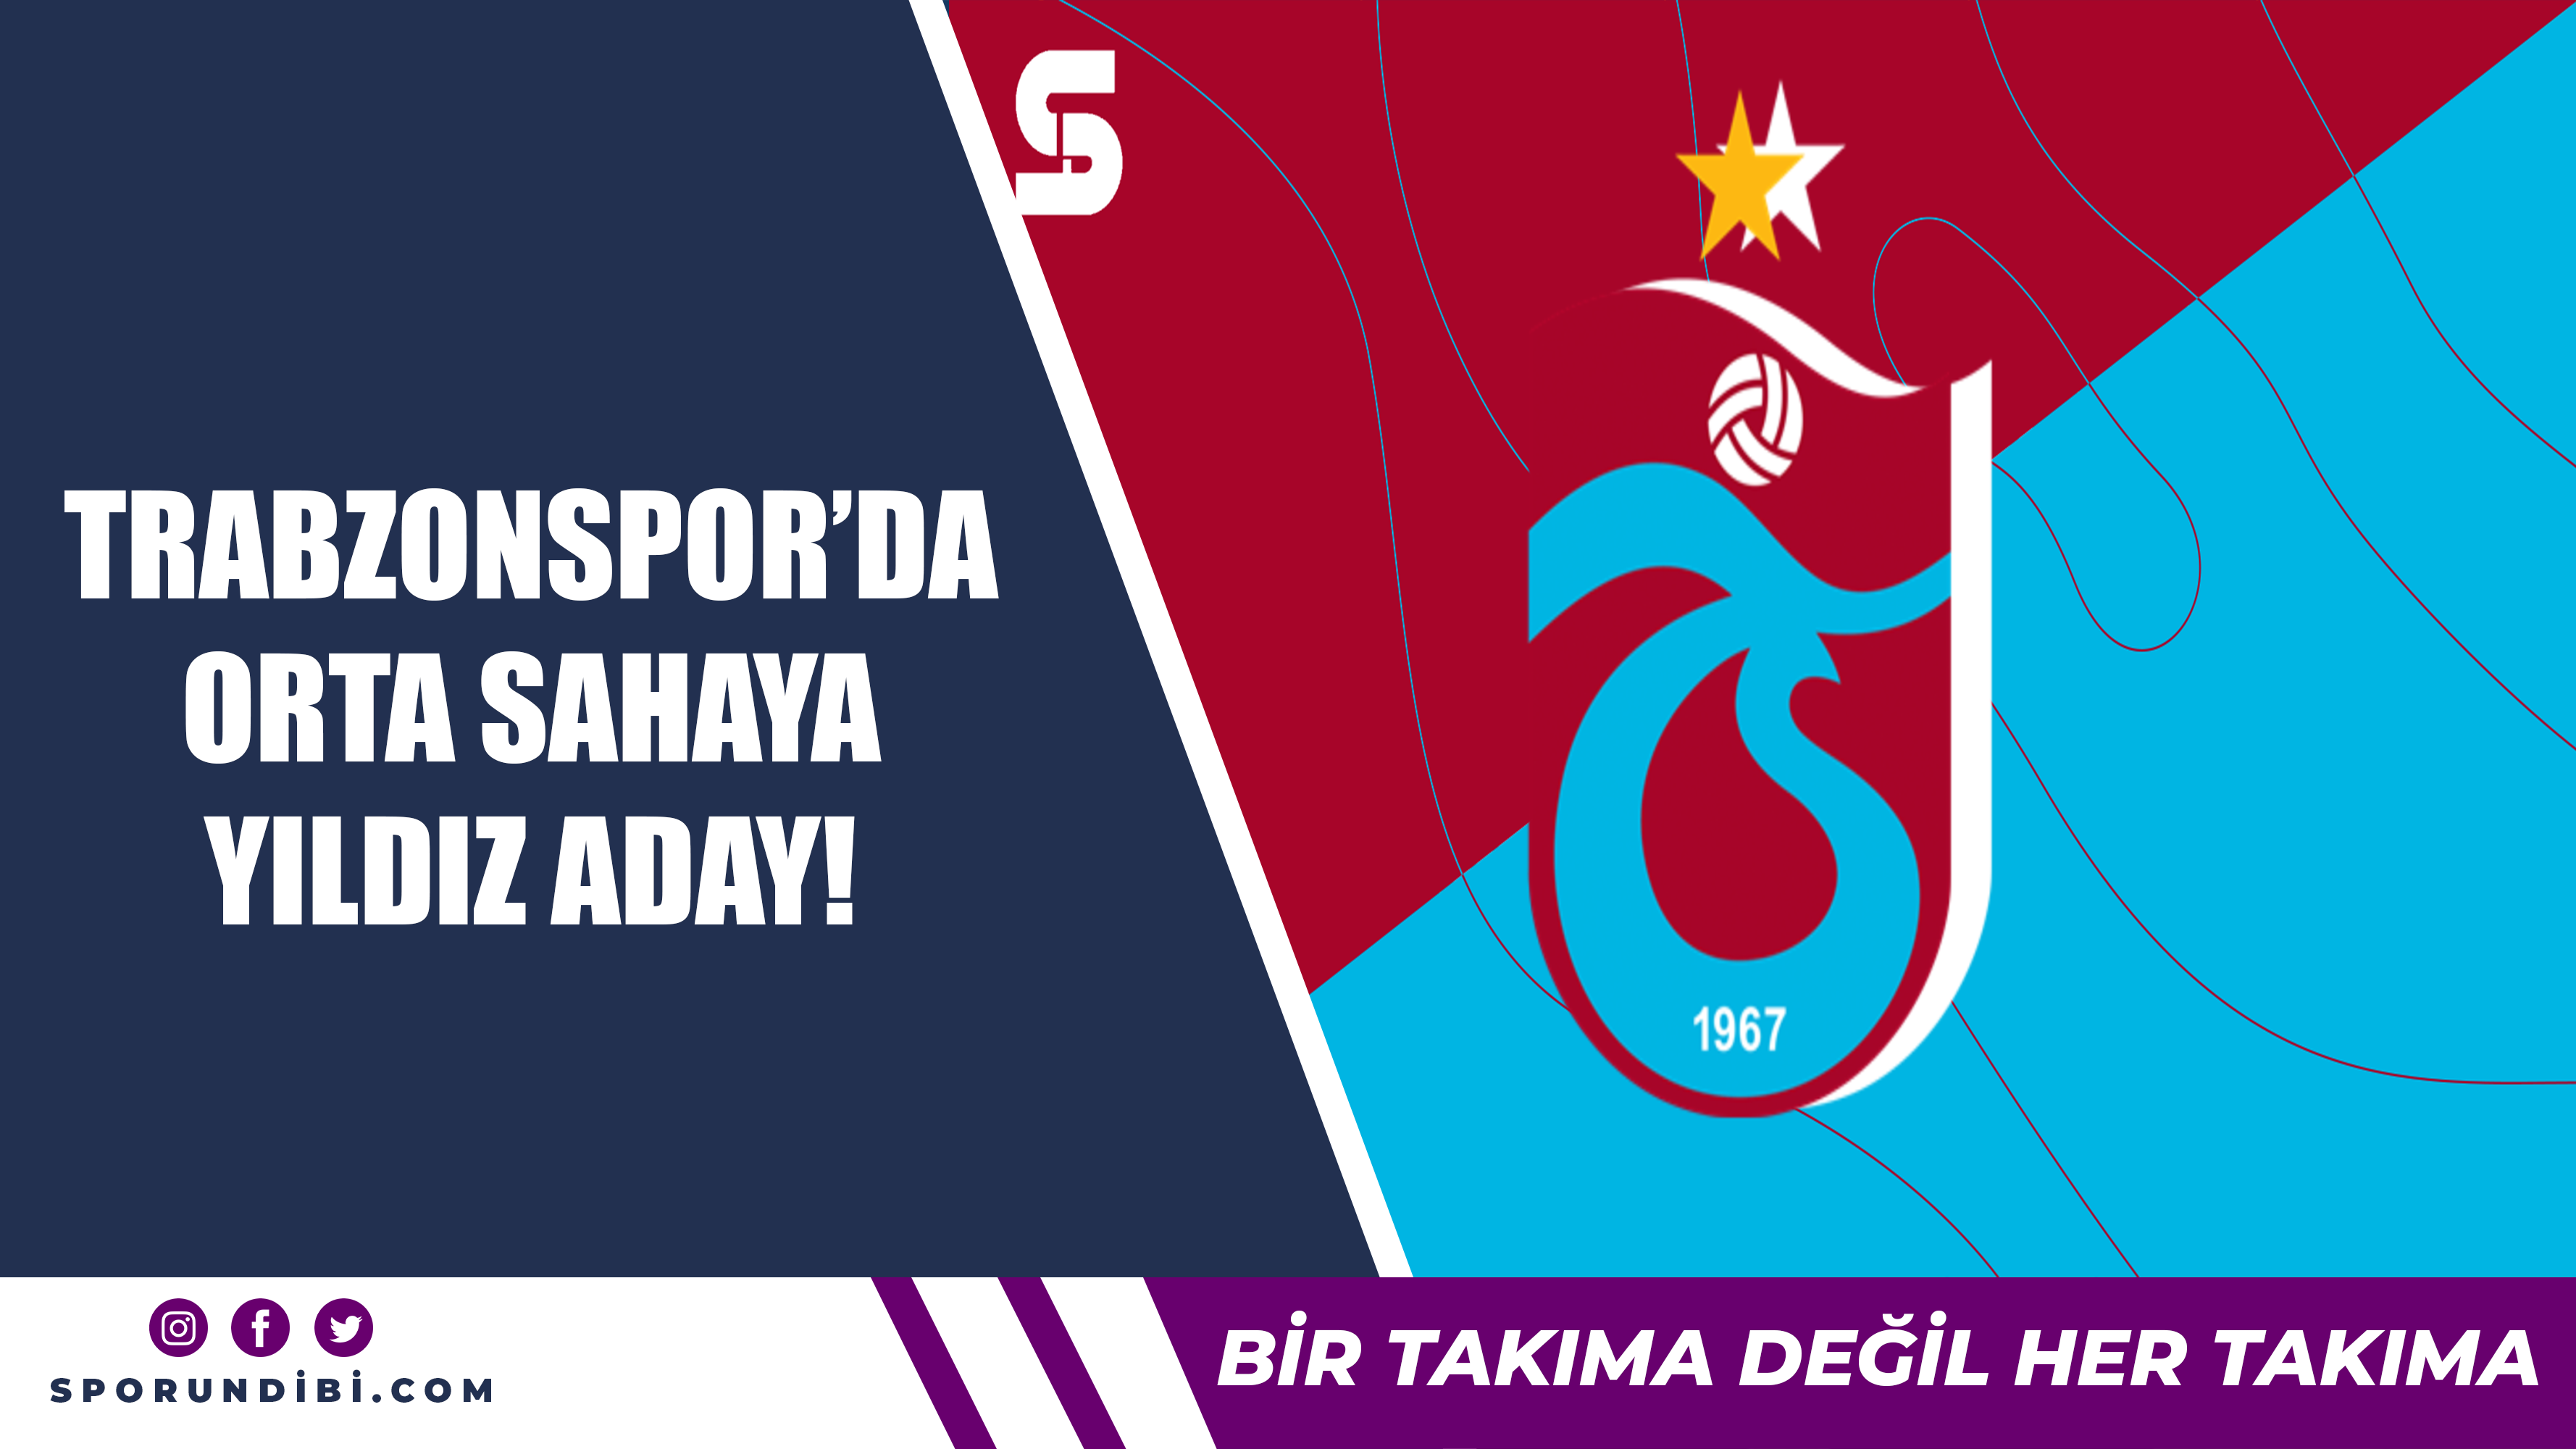 Trabzonspor'da orta sahaya yıldız aday!